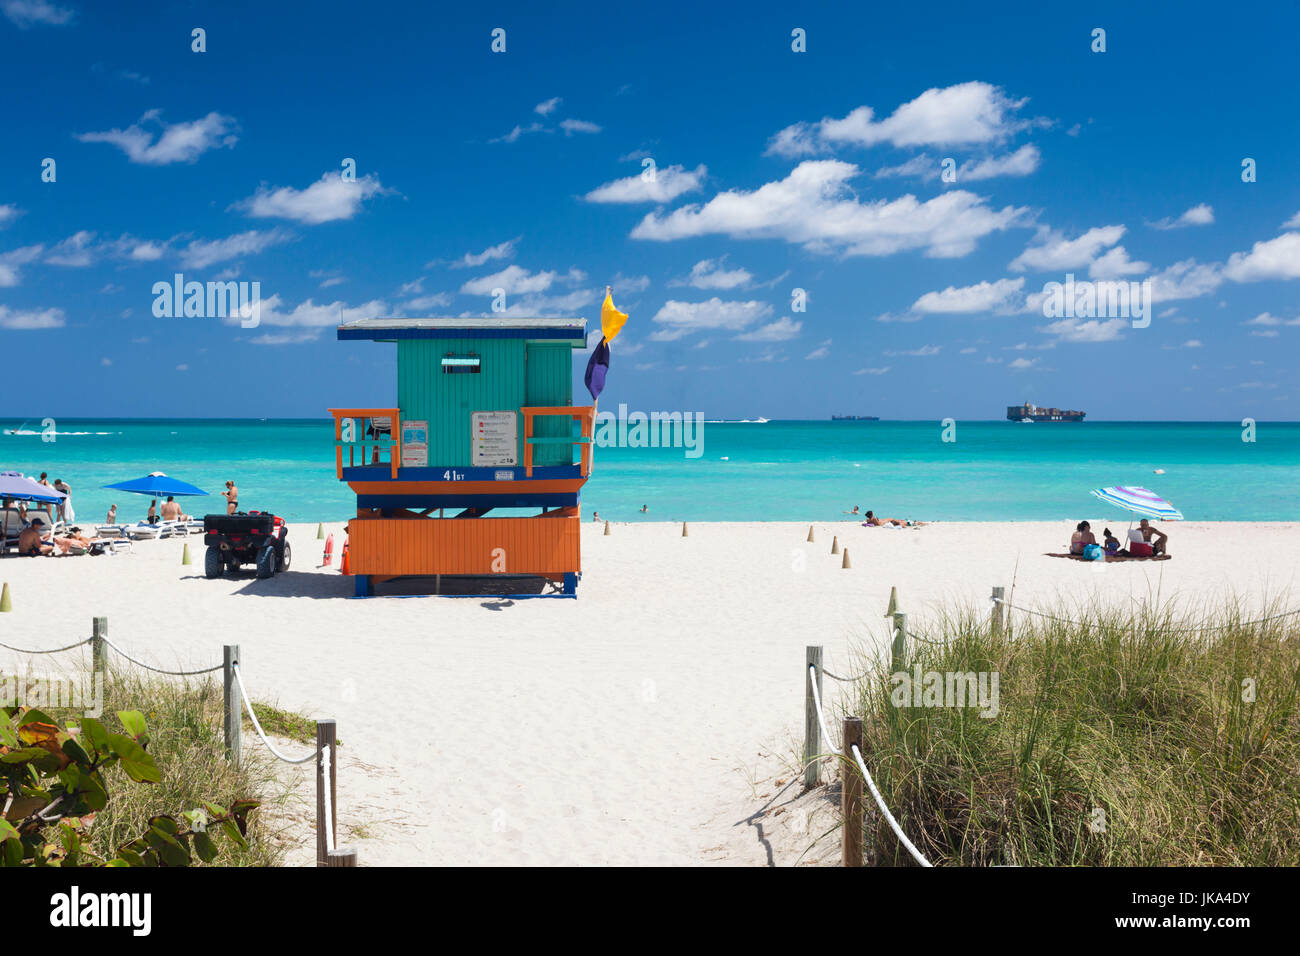 USA, Miami Beach, South Beach, Lifeguard hut on Miami Beach Stock Photo